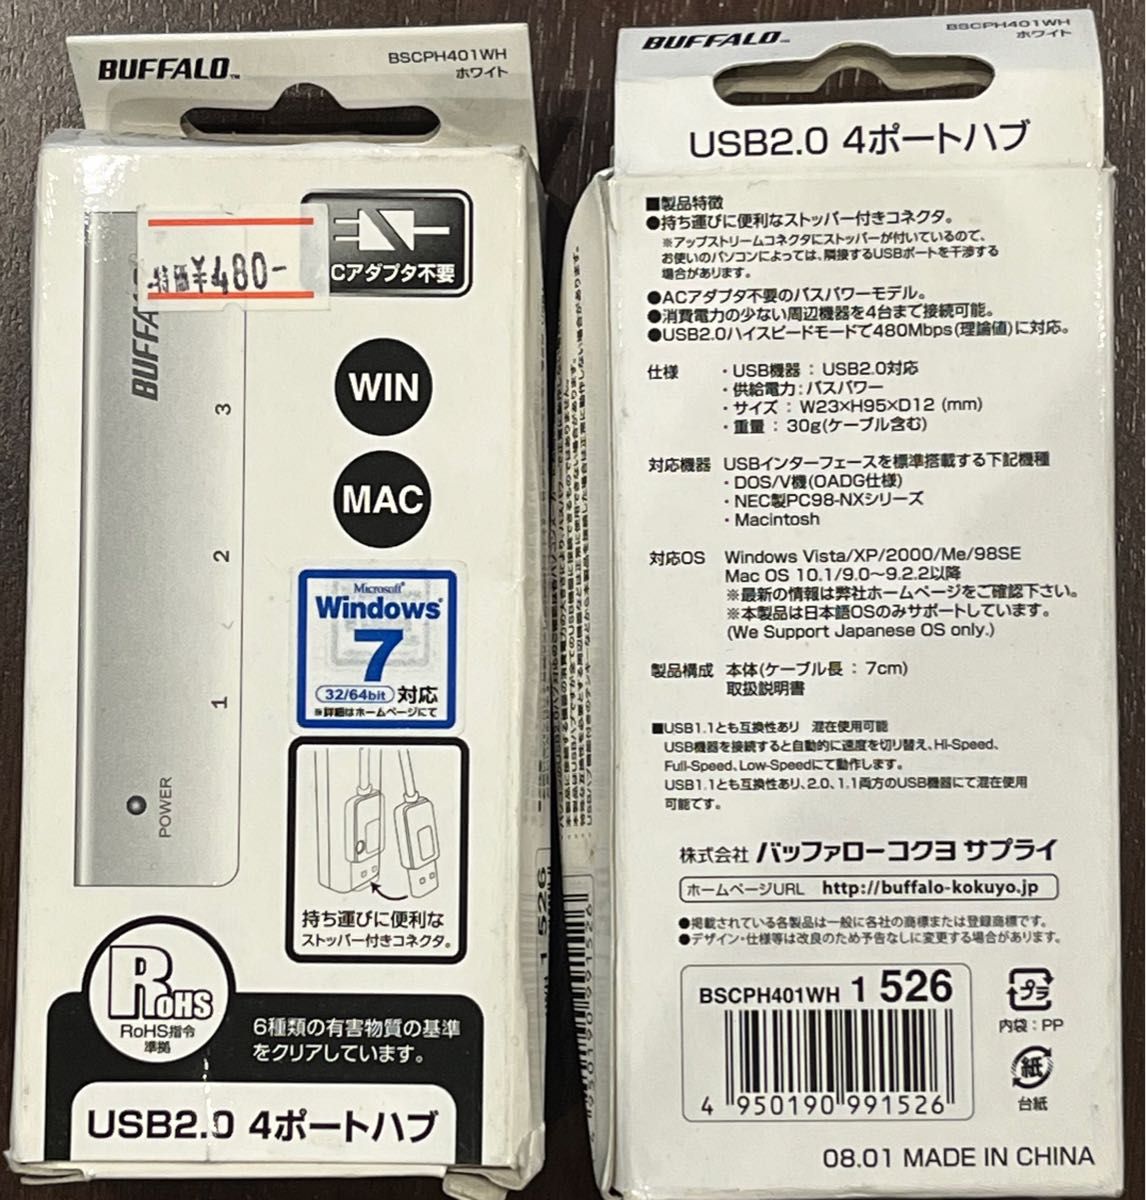 LANケーブル8本・USBフラッシュメモリ2個・USB2.0 4ポートハブ2個セット